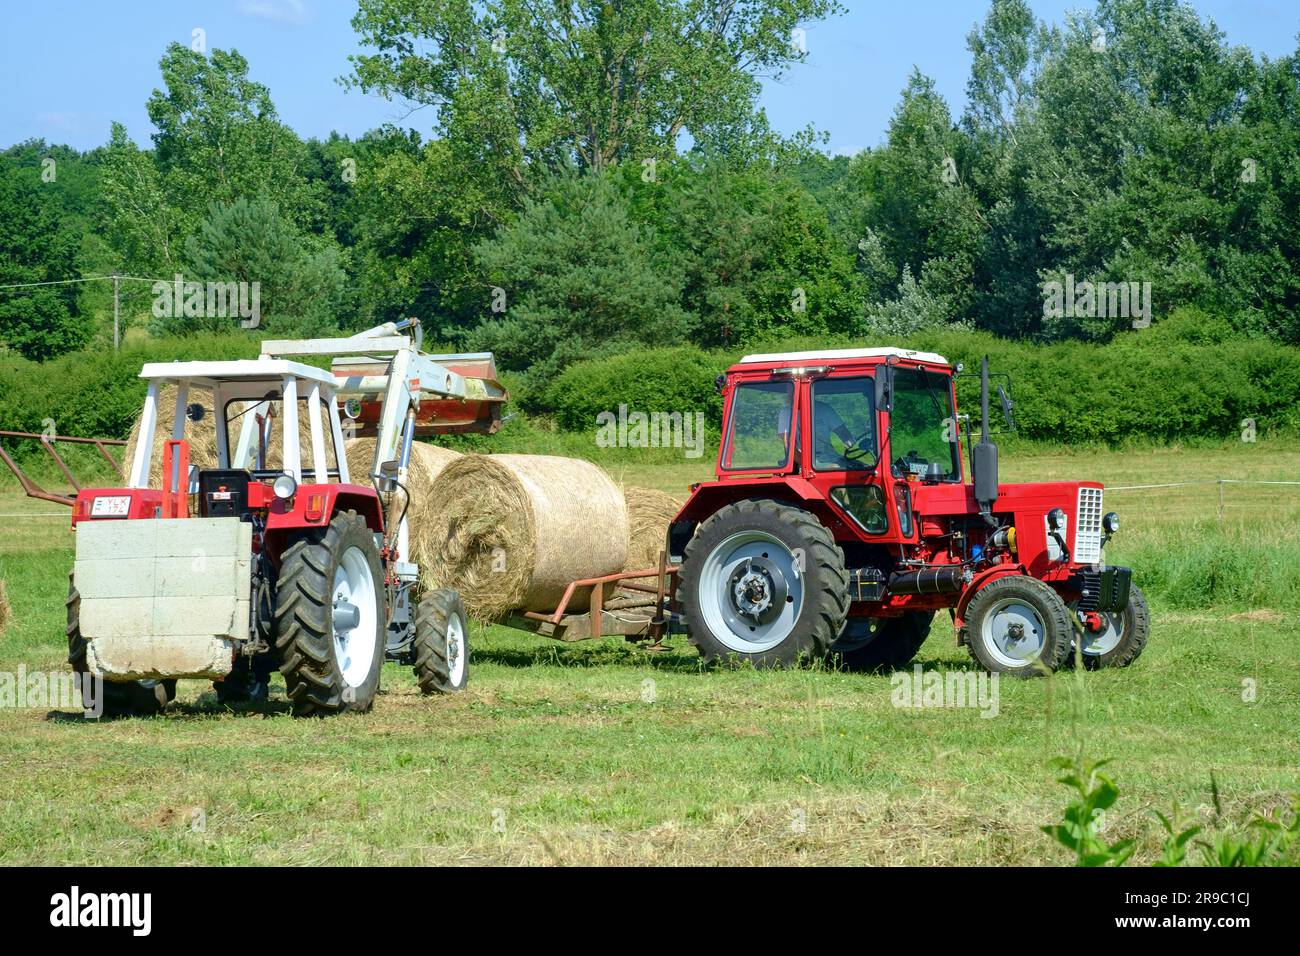 tracteur steyr 650 utilisé pour empiler des balles rondes de foin après la récolte du comté de zala en hongrie Banque D'Images